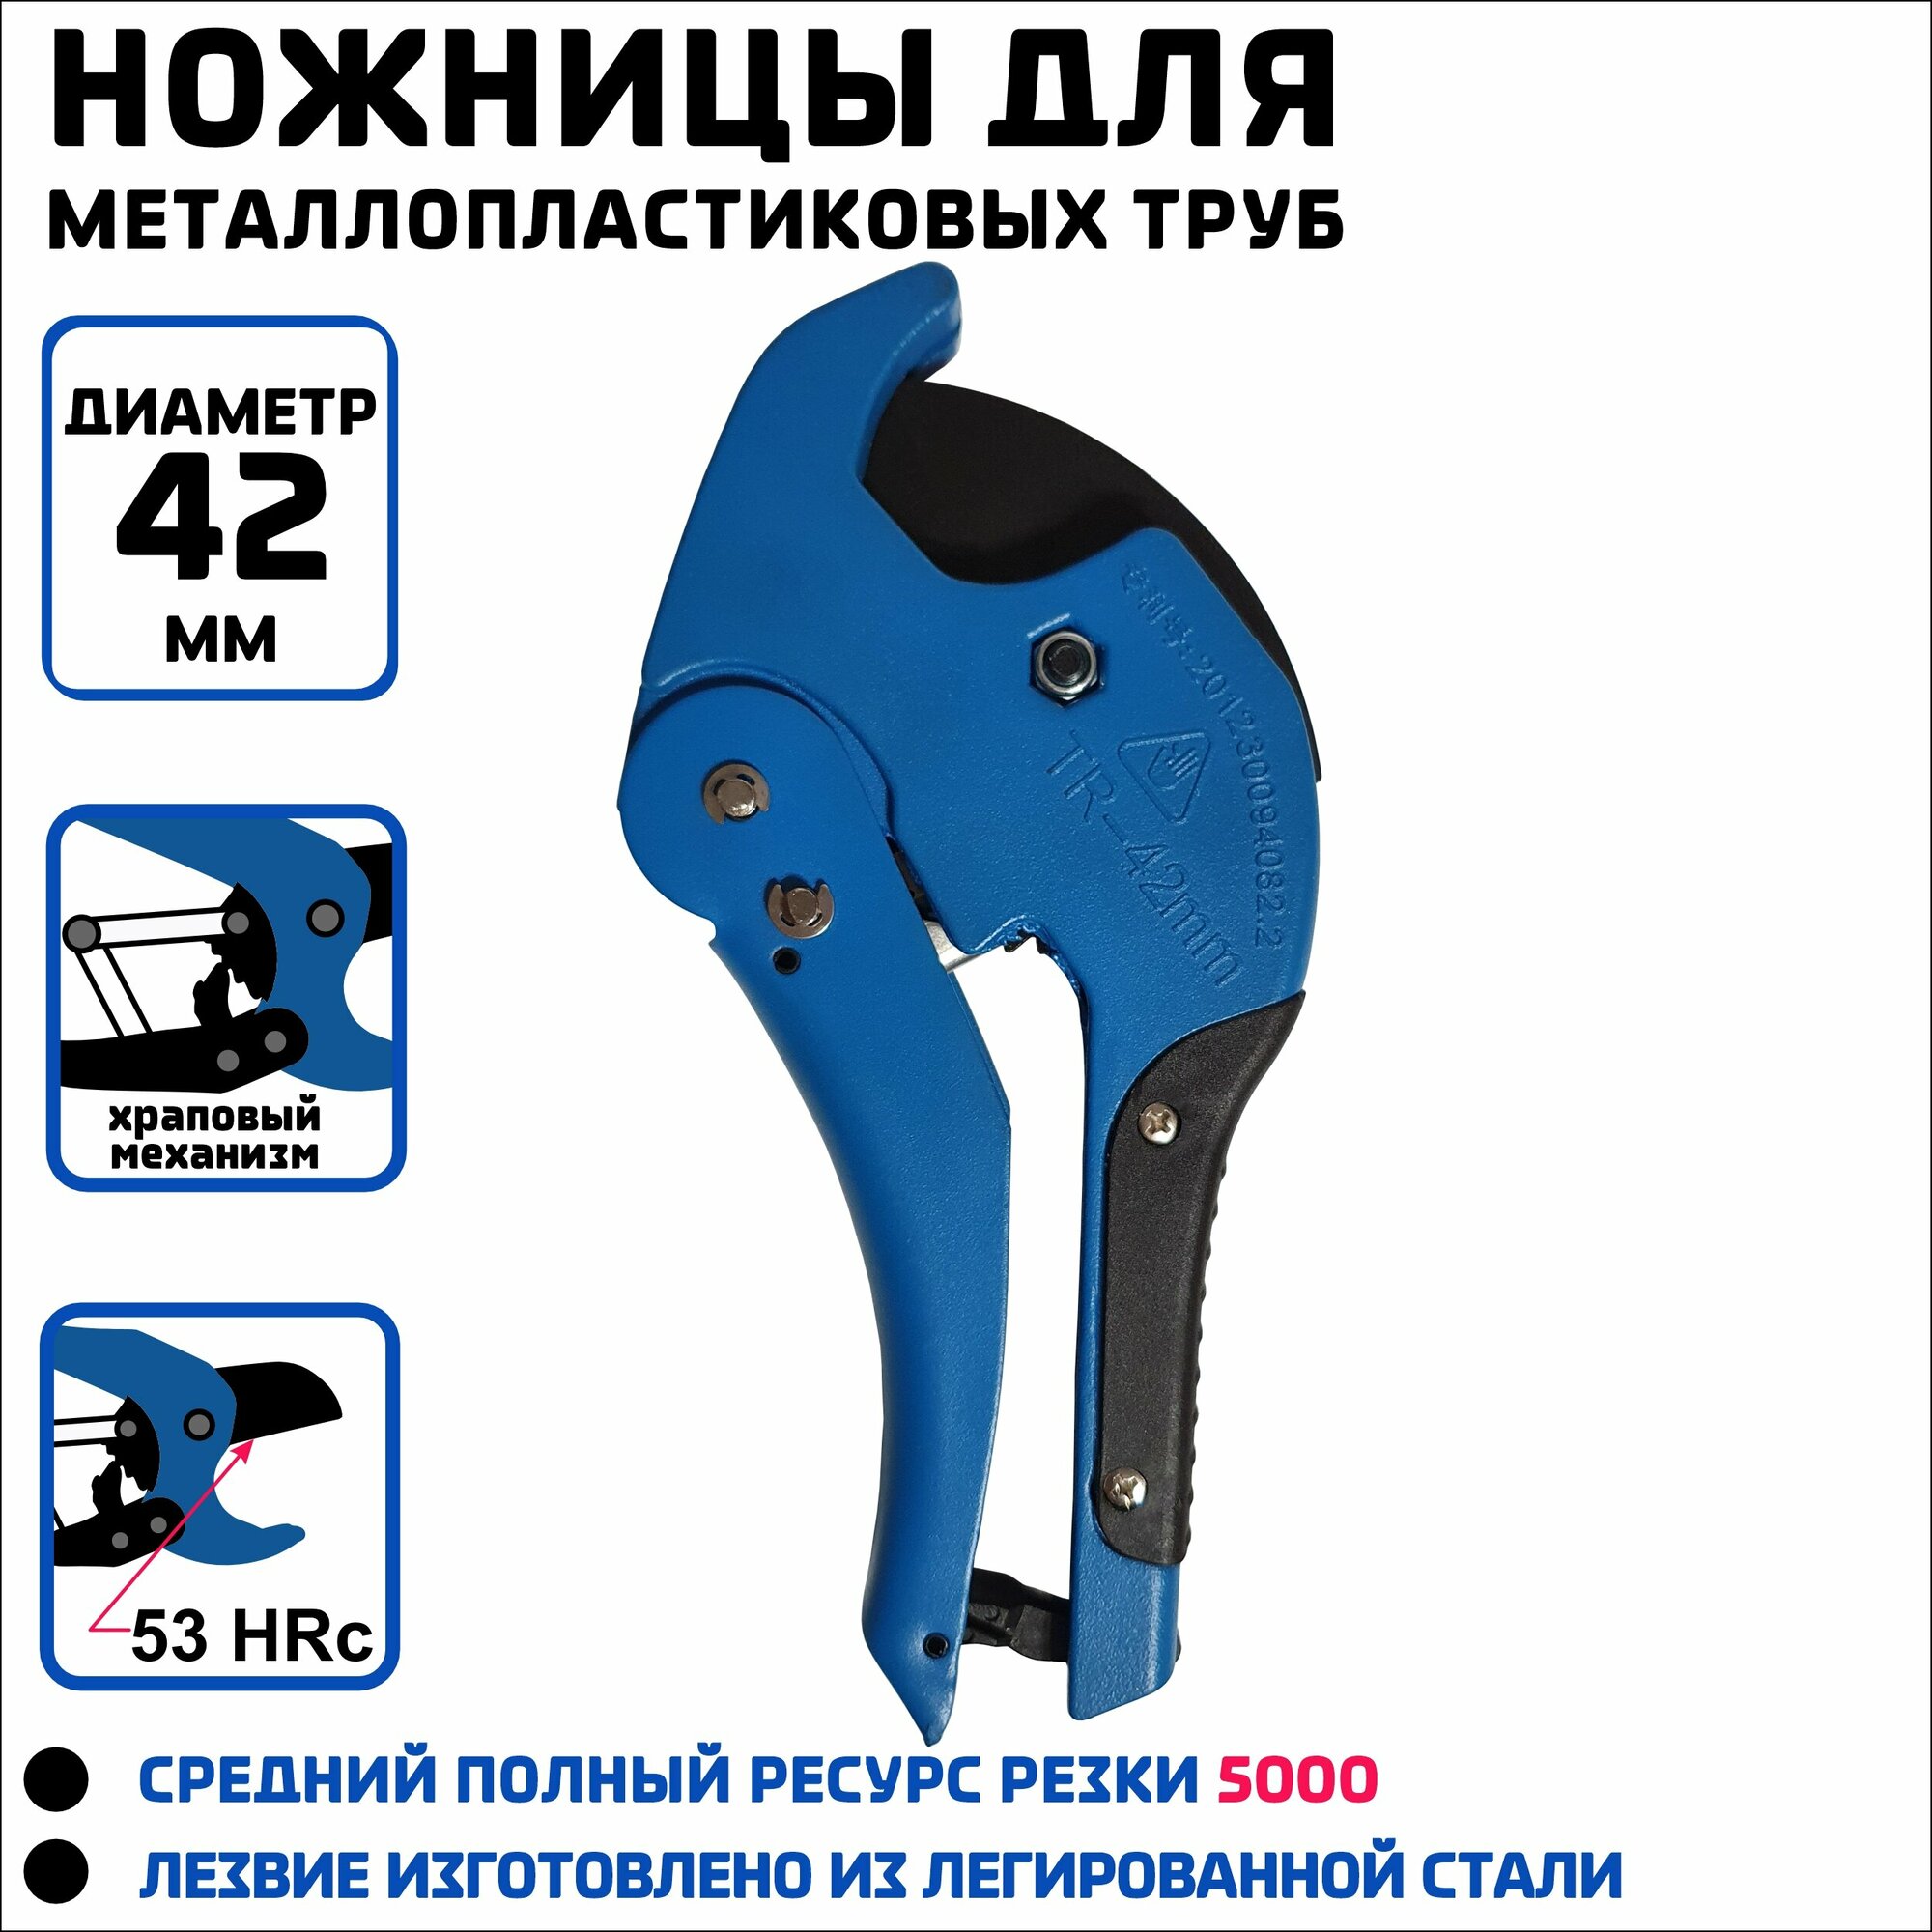 Ножницы усиленные для резки ПВХ труб, VER8 06, D до 42мм/ ручной труборез/ ножницы для металлопластиковых труб, синие